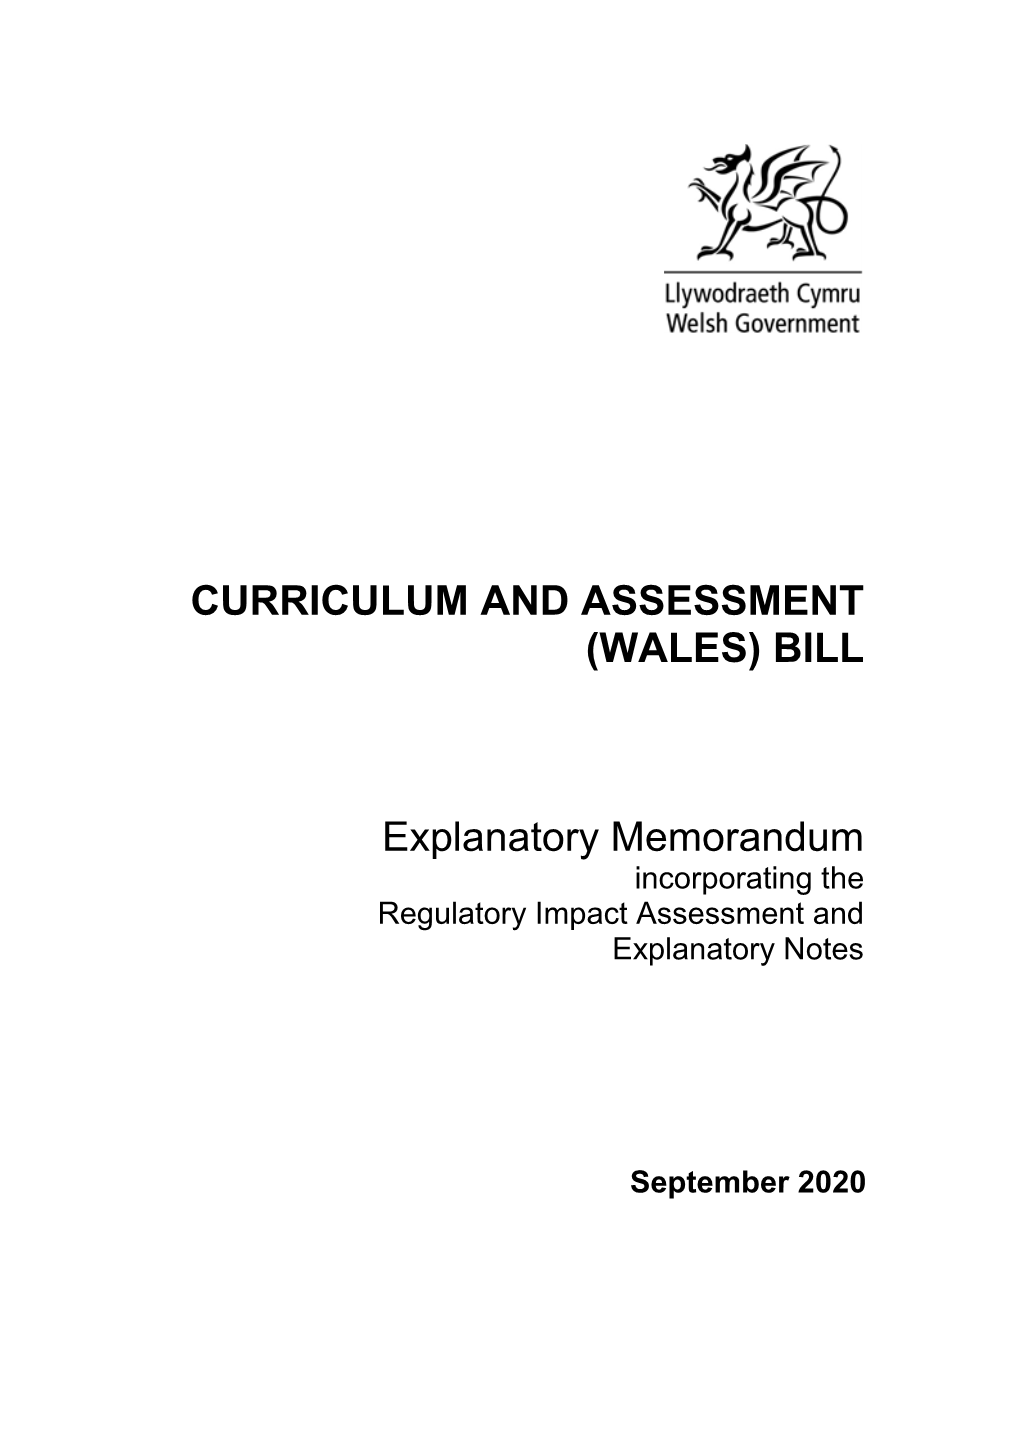 (WALES) BILL Explanatory Memorandum